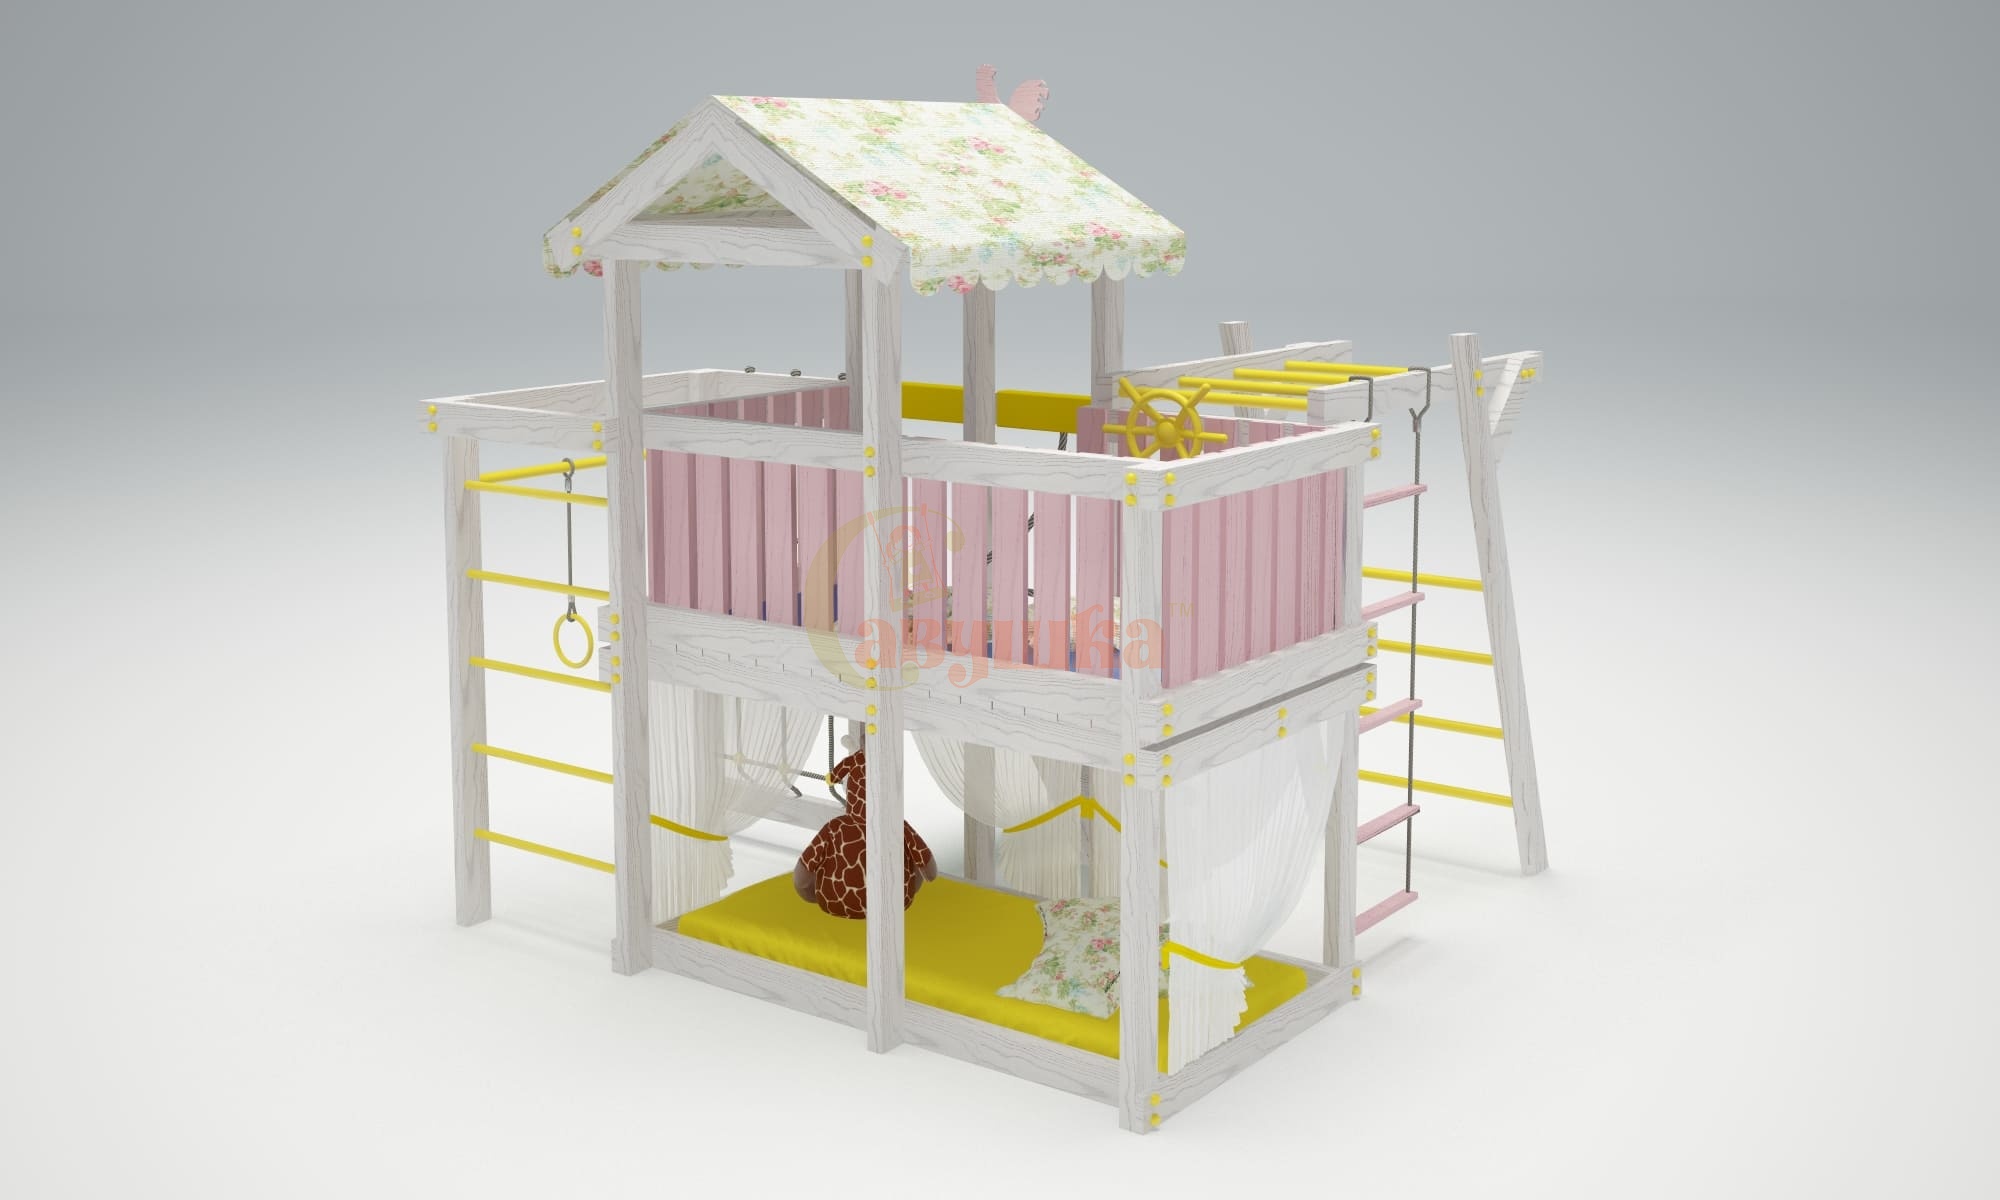 Детские спортивные комплексы для дома - Игровой комплекс - кровать "Савушка Baby - 4"